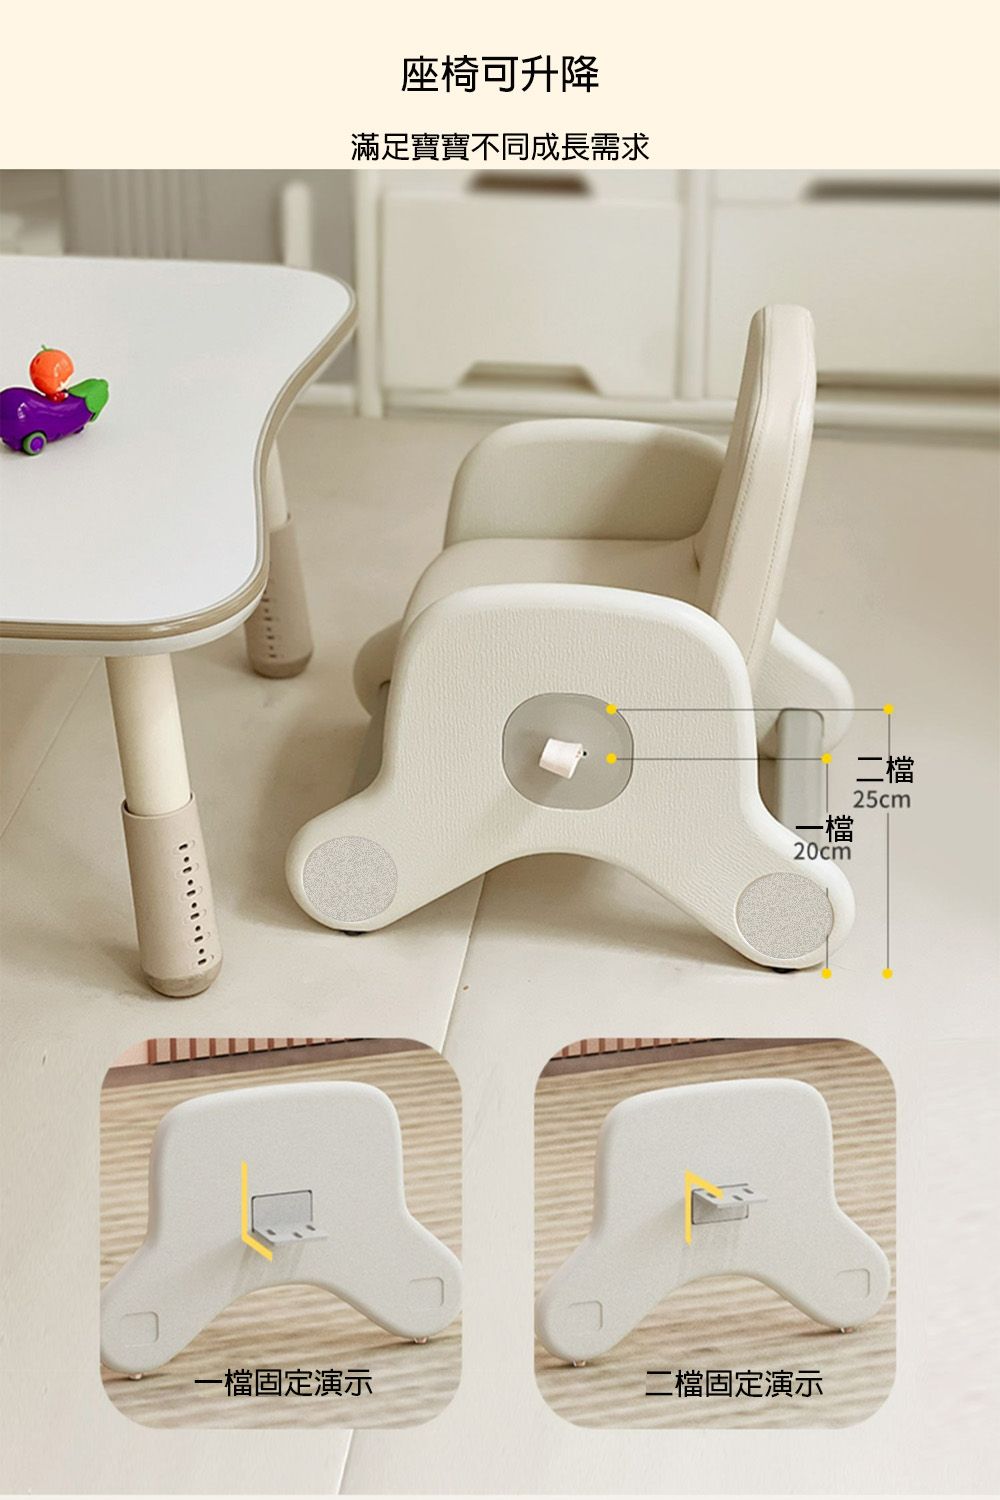 座椅可升降滿足寶寶不同成長需求一檔20cm一檔固定演示二檔固定演示二檔25cm